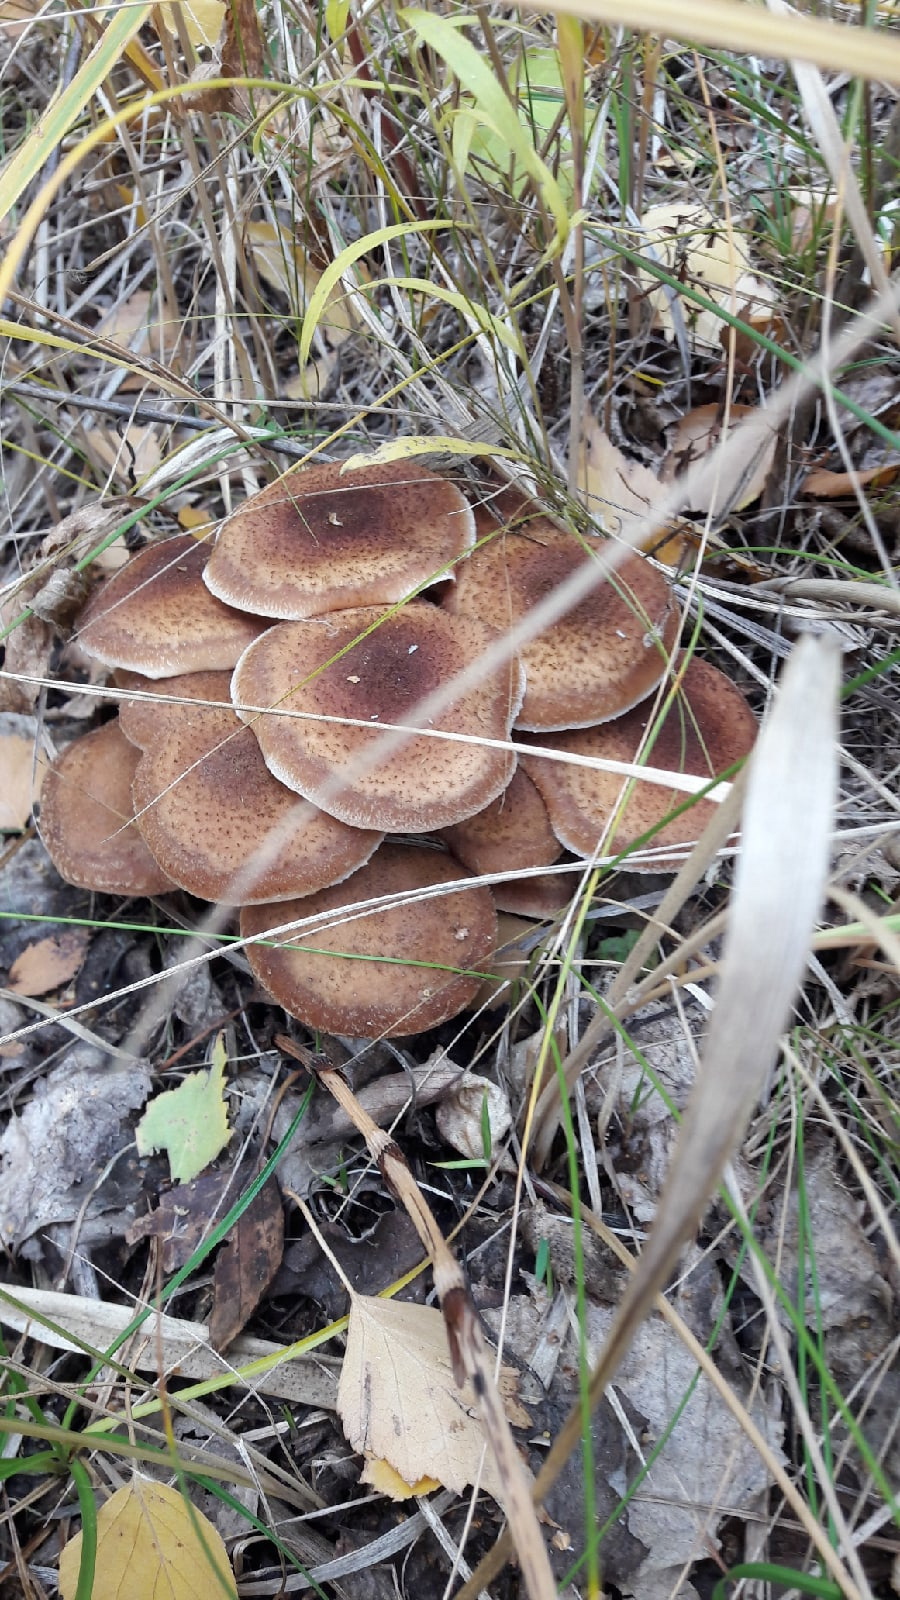 А вы знаете, как называются эти грибы, похожие на оладьи?